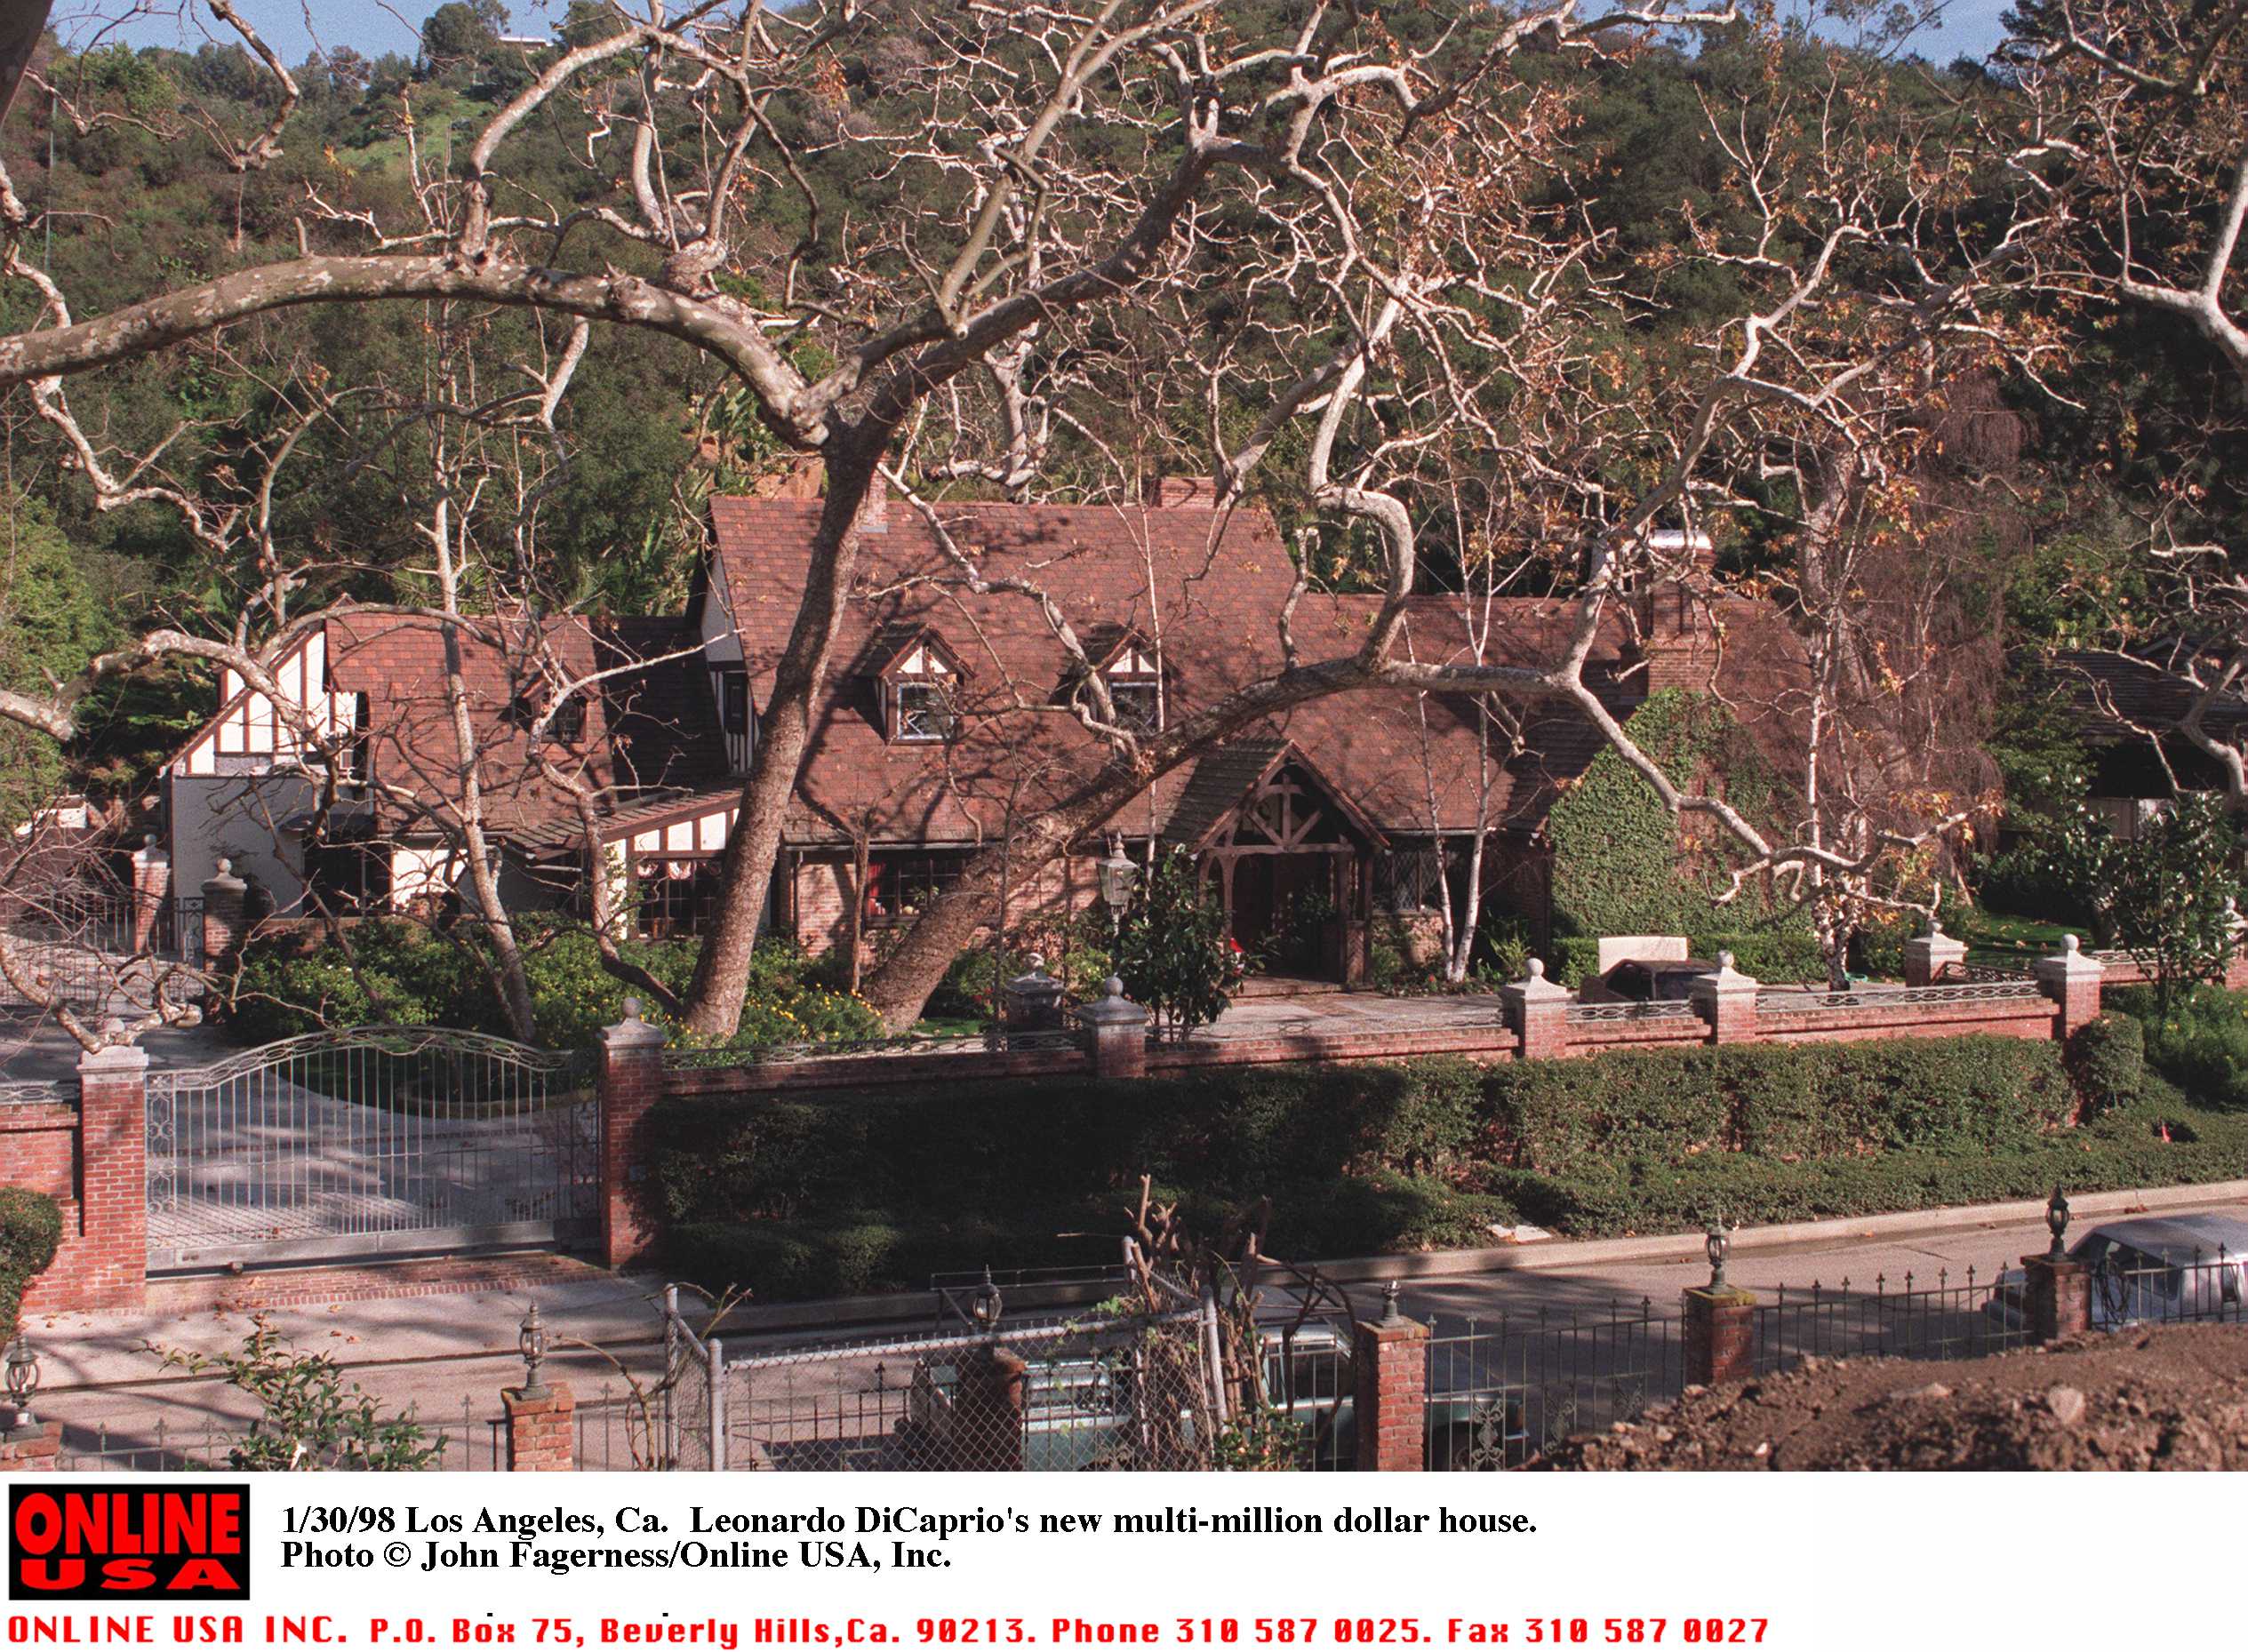 El bungalow de Leonardo Dicaprio visto el 30 de enero de 1998 | Foto: Getty Images